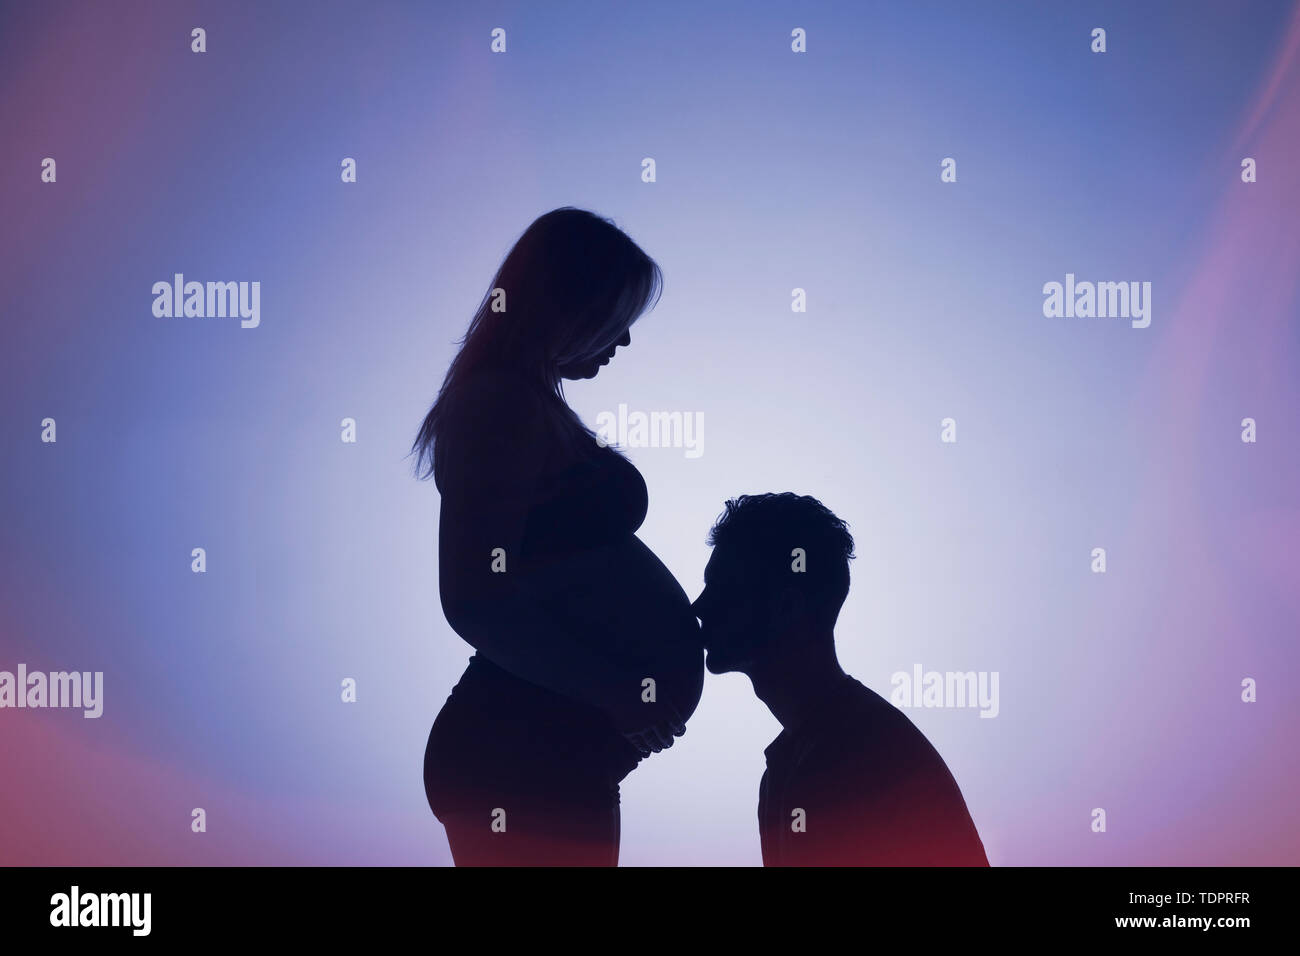 Una silhouette in uno studio di un giovane che stanno avendo un bambino e il padre sta baciando la madre della pancia che è ben lungo nel suo stato di gravidanza Foto Stock